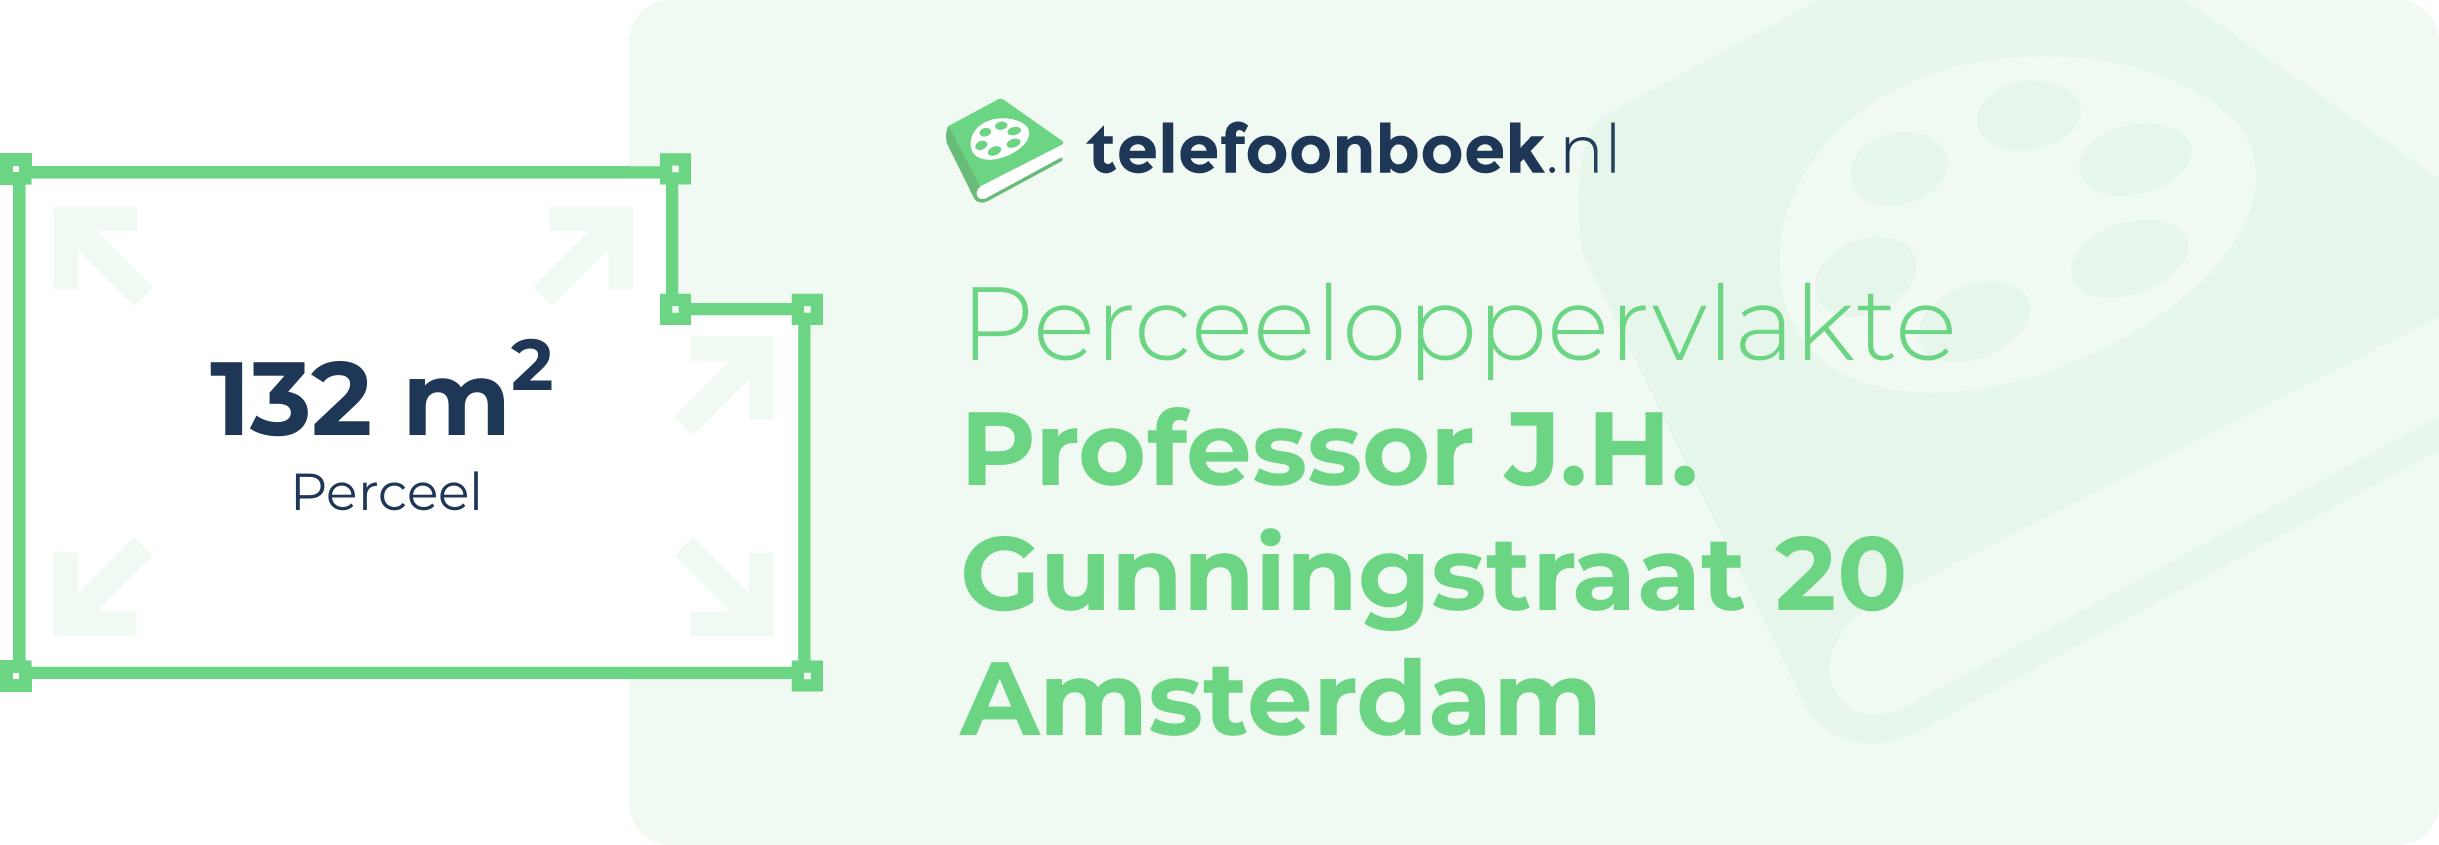 Perceeloppervlakte Professor J.H. Gunningstraat 20 Amsterdam